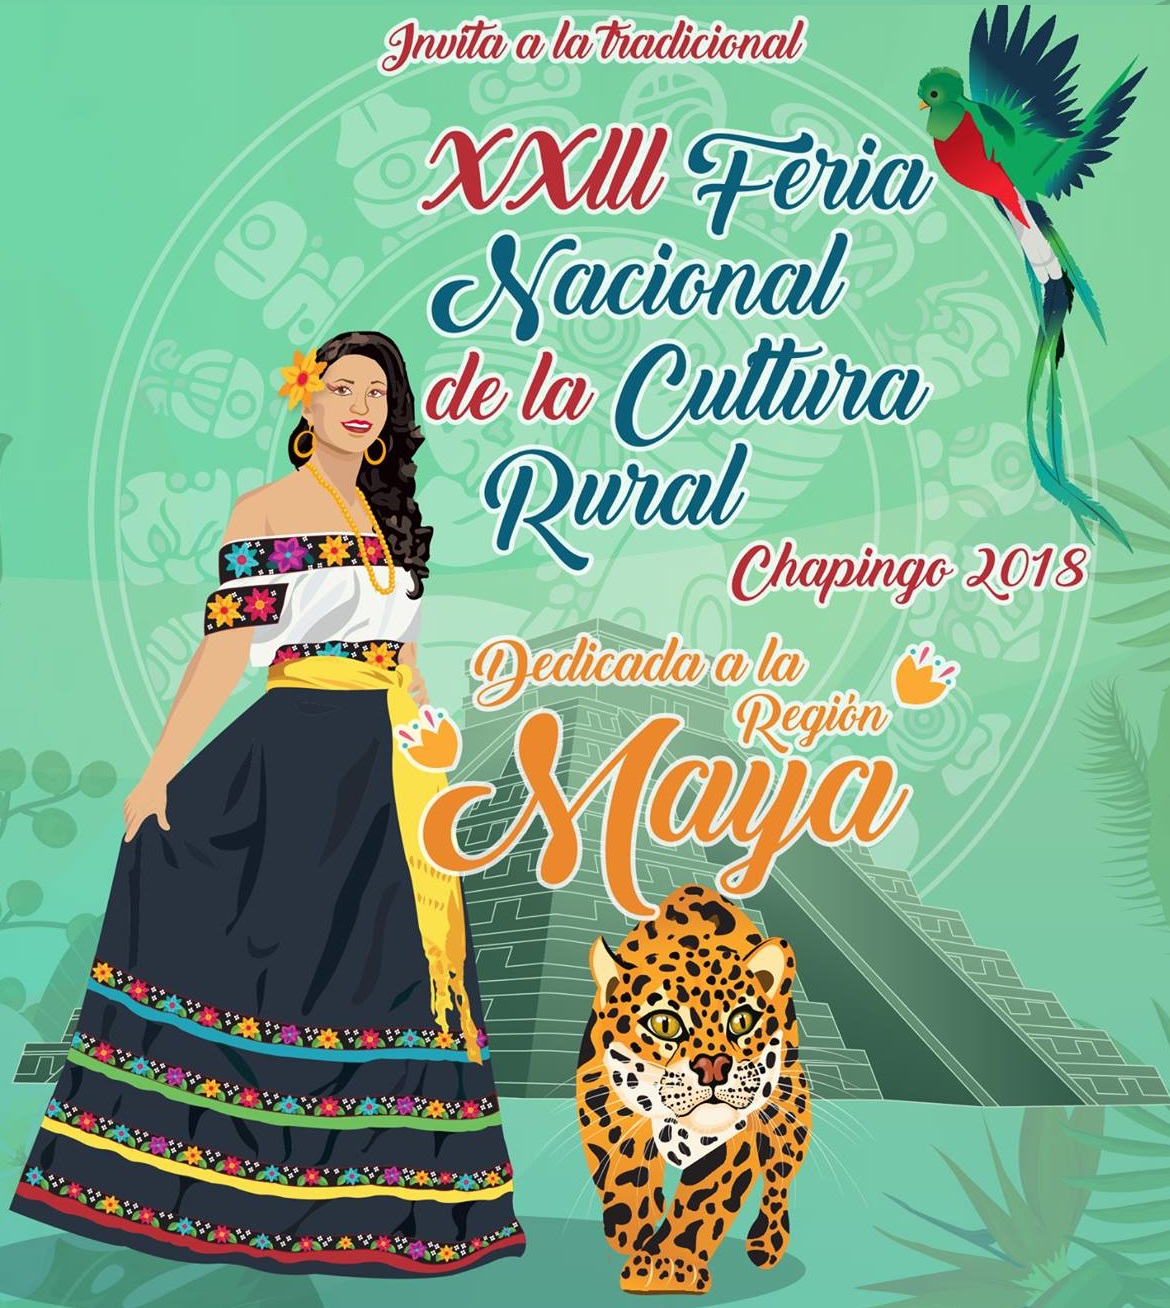 Invitación a la XXIII Feria Nacional de la Cultura Rural Chapingo 2018.